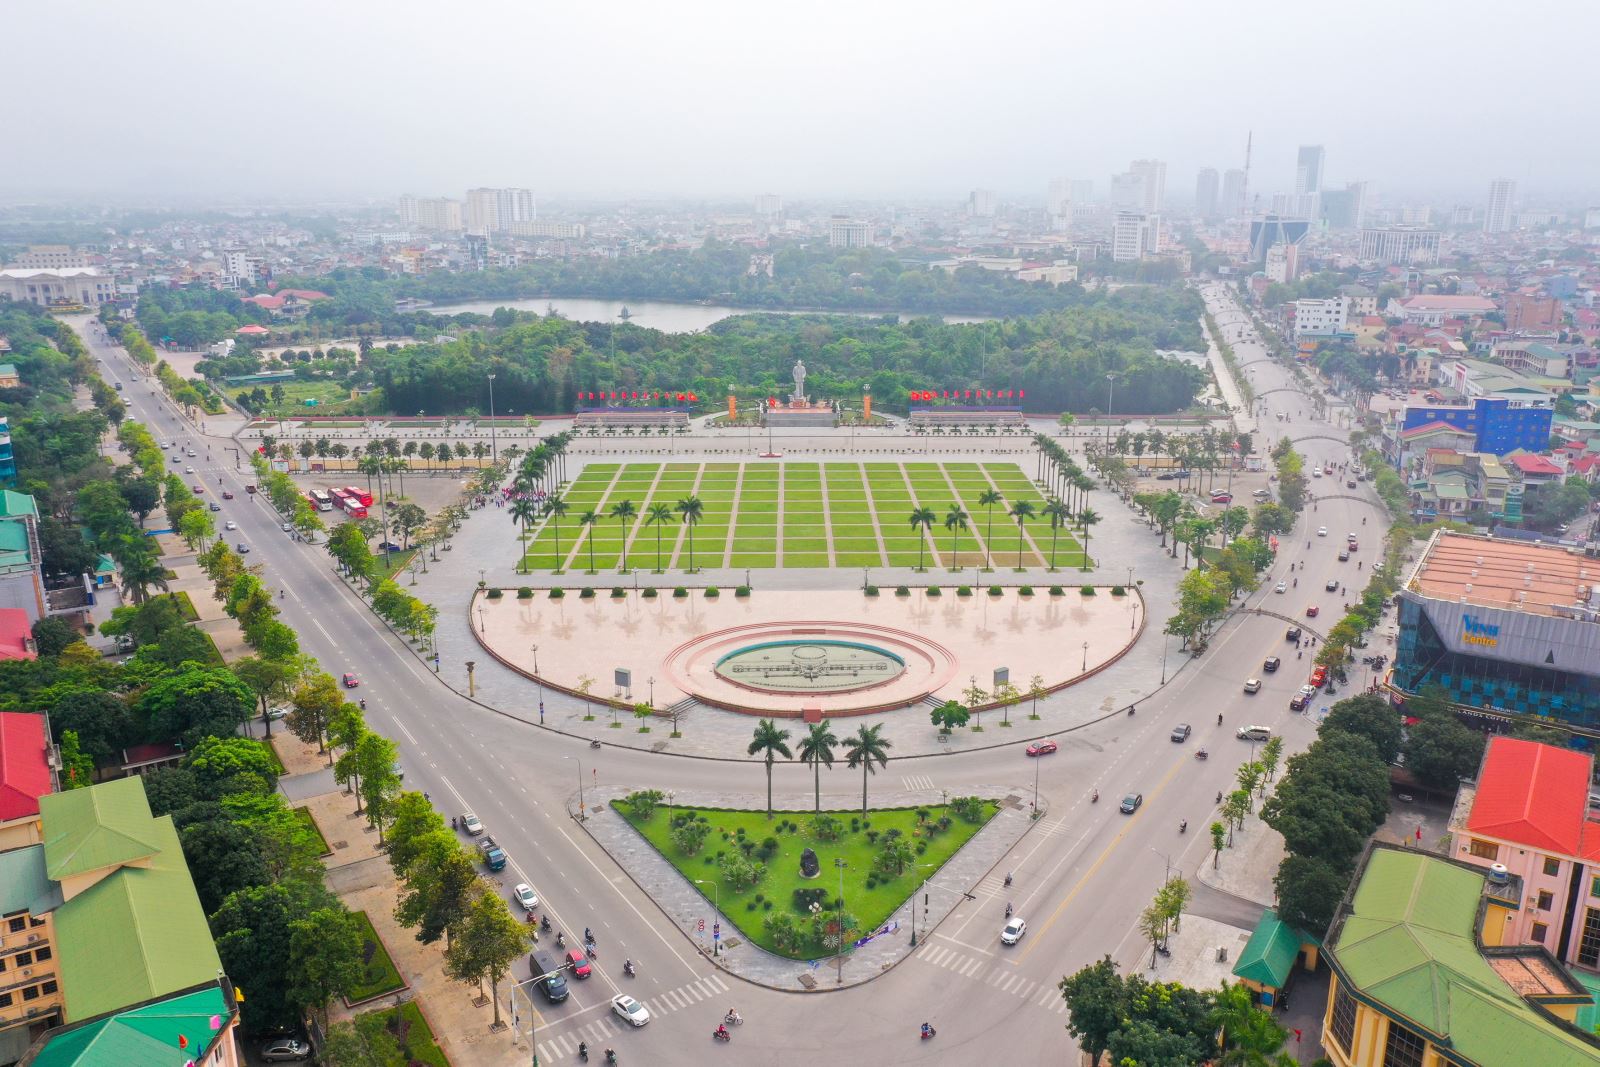 Quảng trường Hồ Chí Minh và Tượng đài Bác Hồ - 20 năm xây dựng và phát  triển - BQL QUẢNG TRƯỜNG HỒ CHÍ MINH VÀ TƯỢNG ĐÀI BÁC HỒ